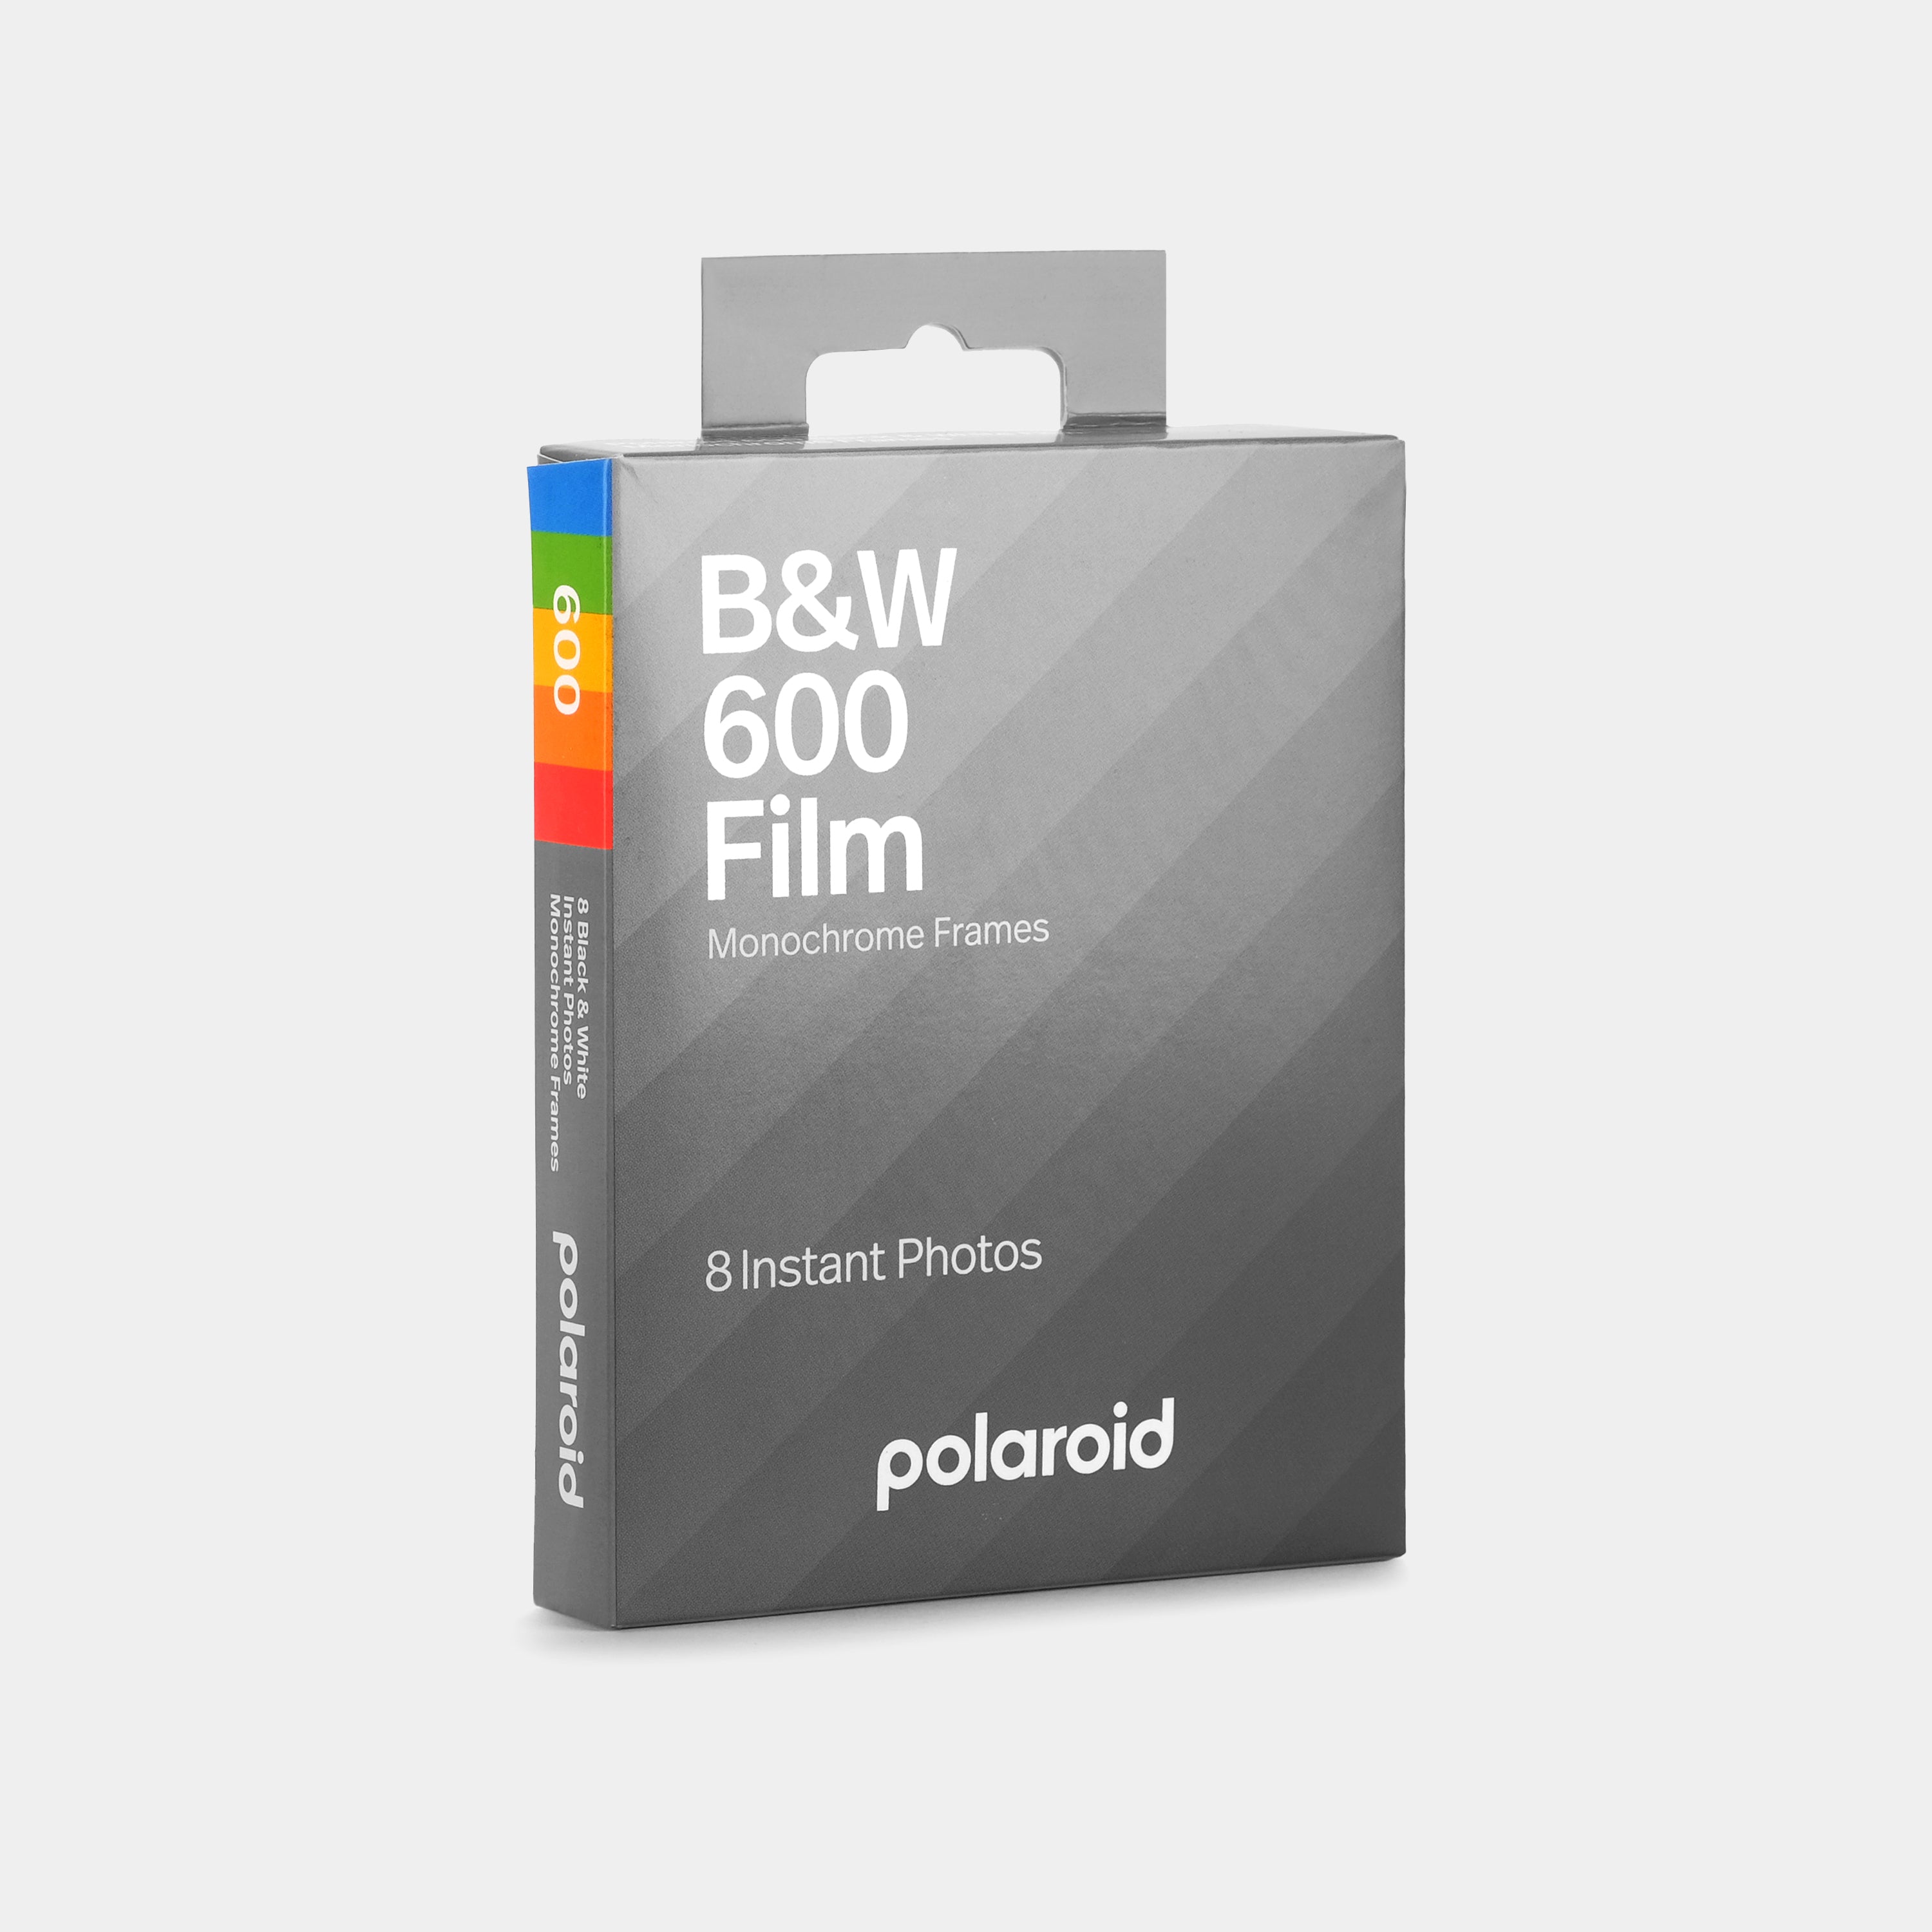 Polaroid B&W 600 Instant Film - Monochrome Frames